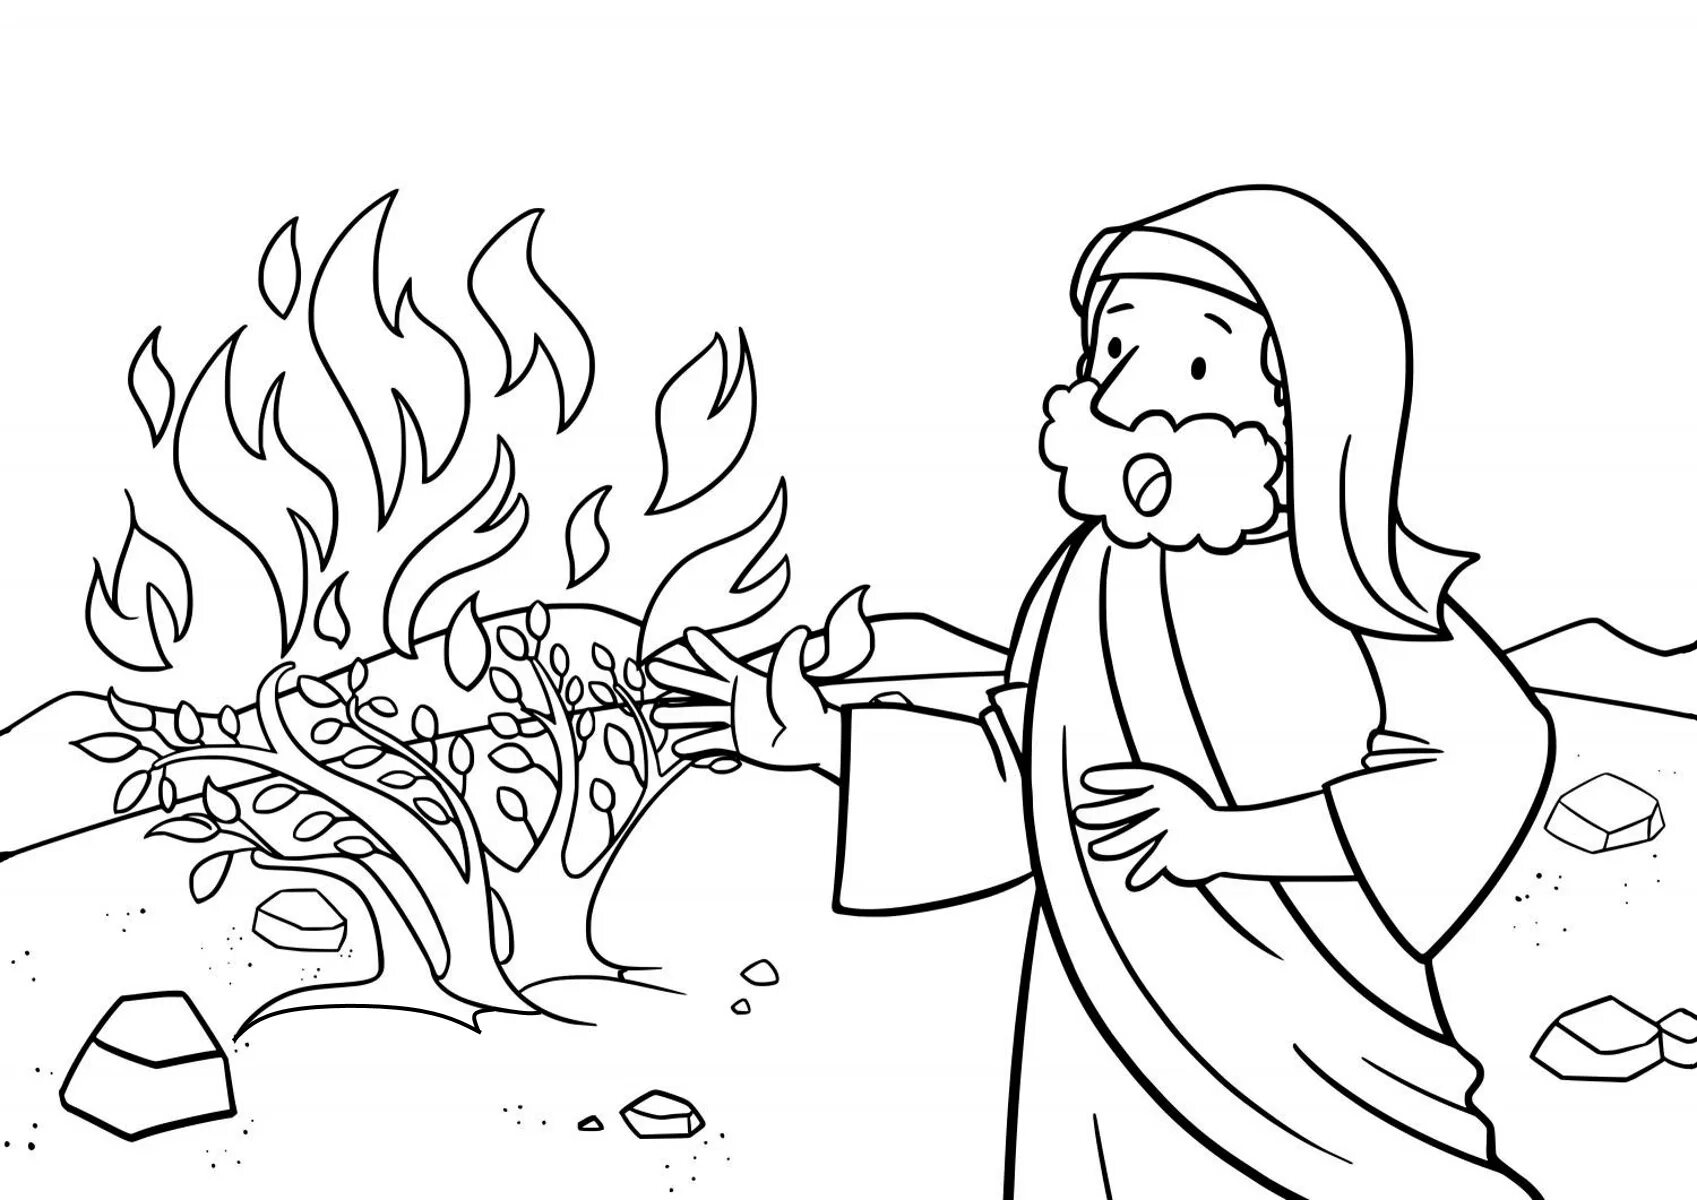 Drawing burning bush #2